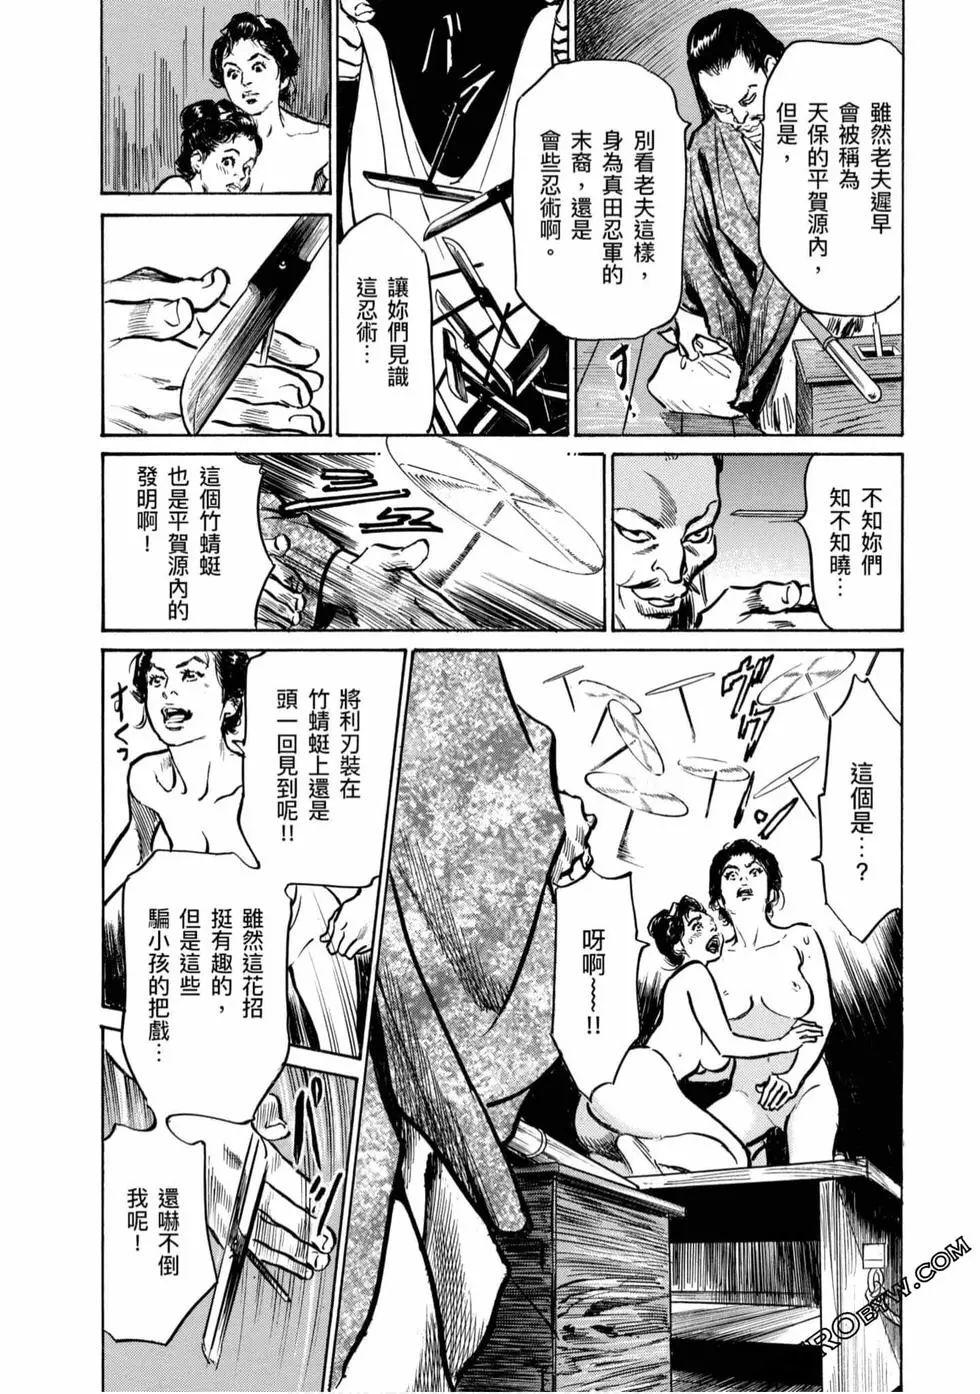 Publico Tenpou Momoiro Suikoden 4 Cream - Page 11